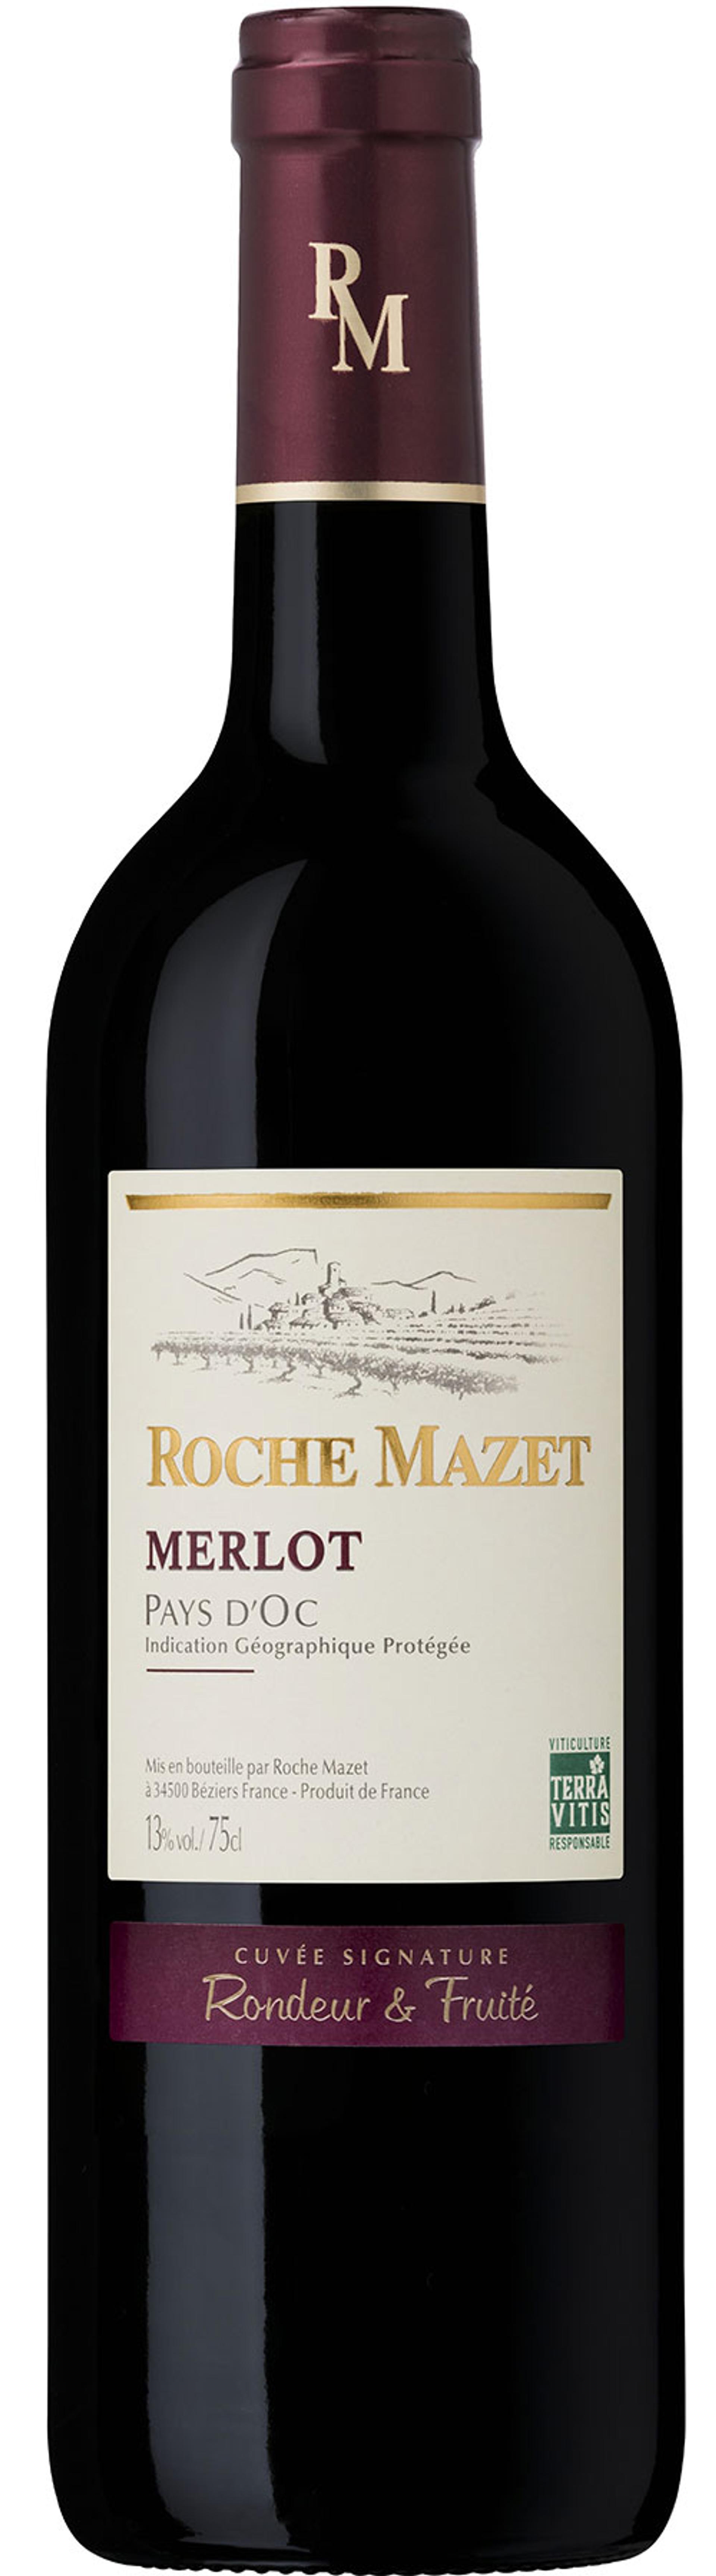 Roche Mazet Merlot